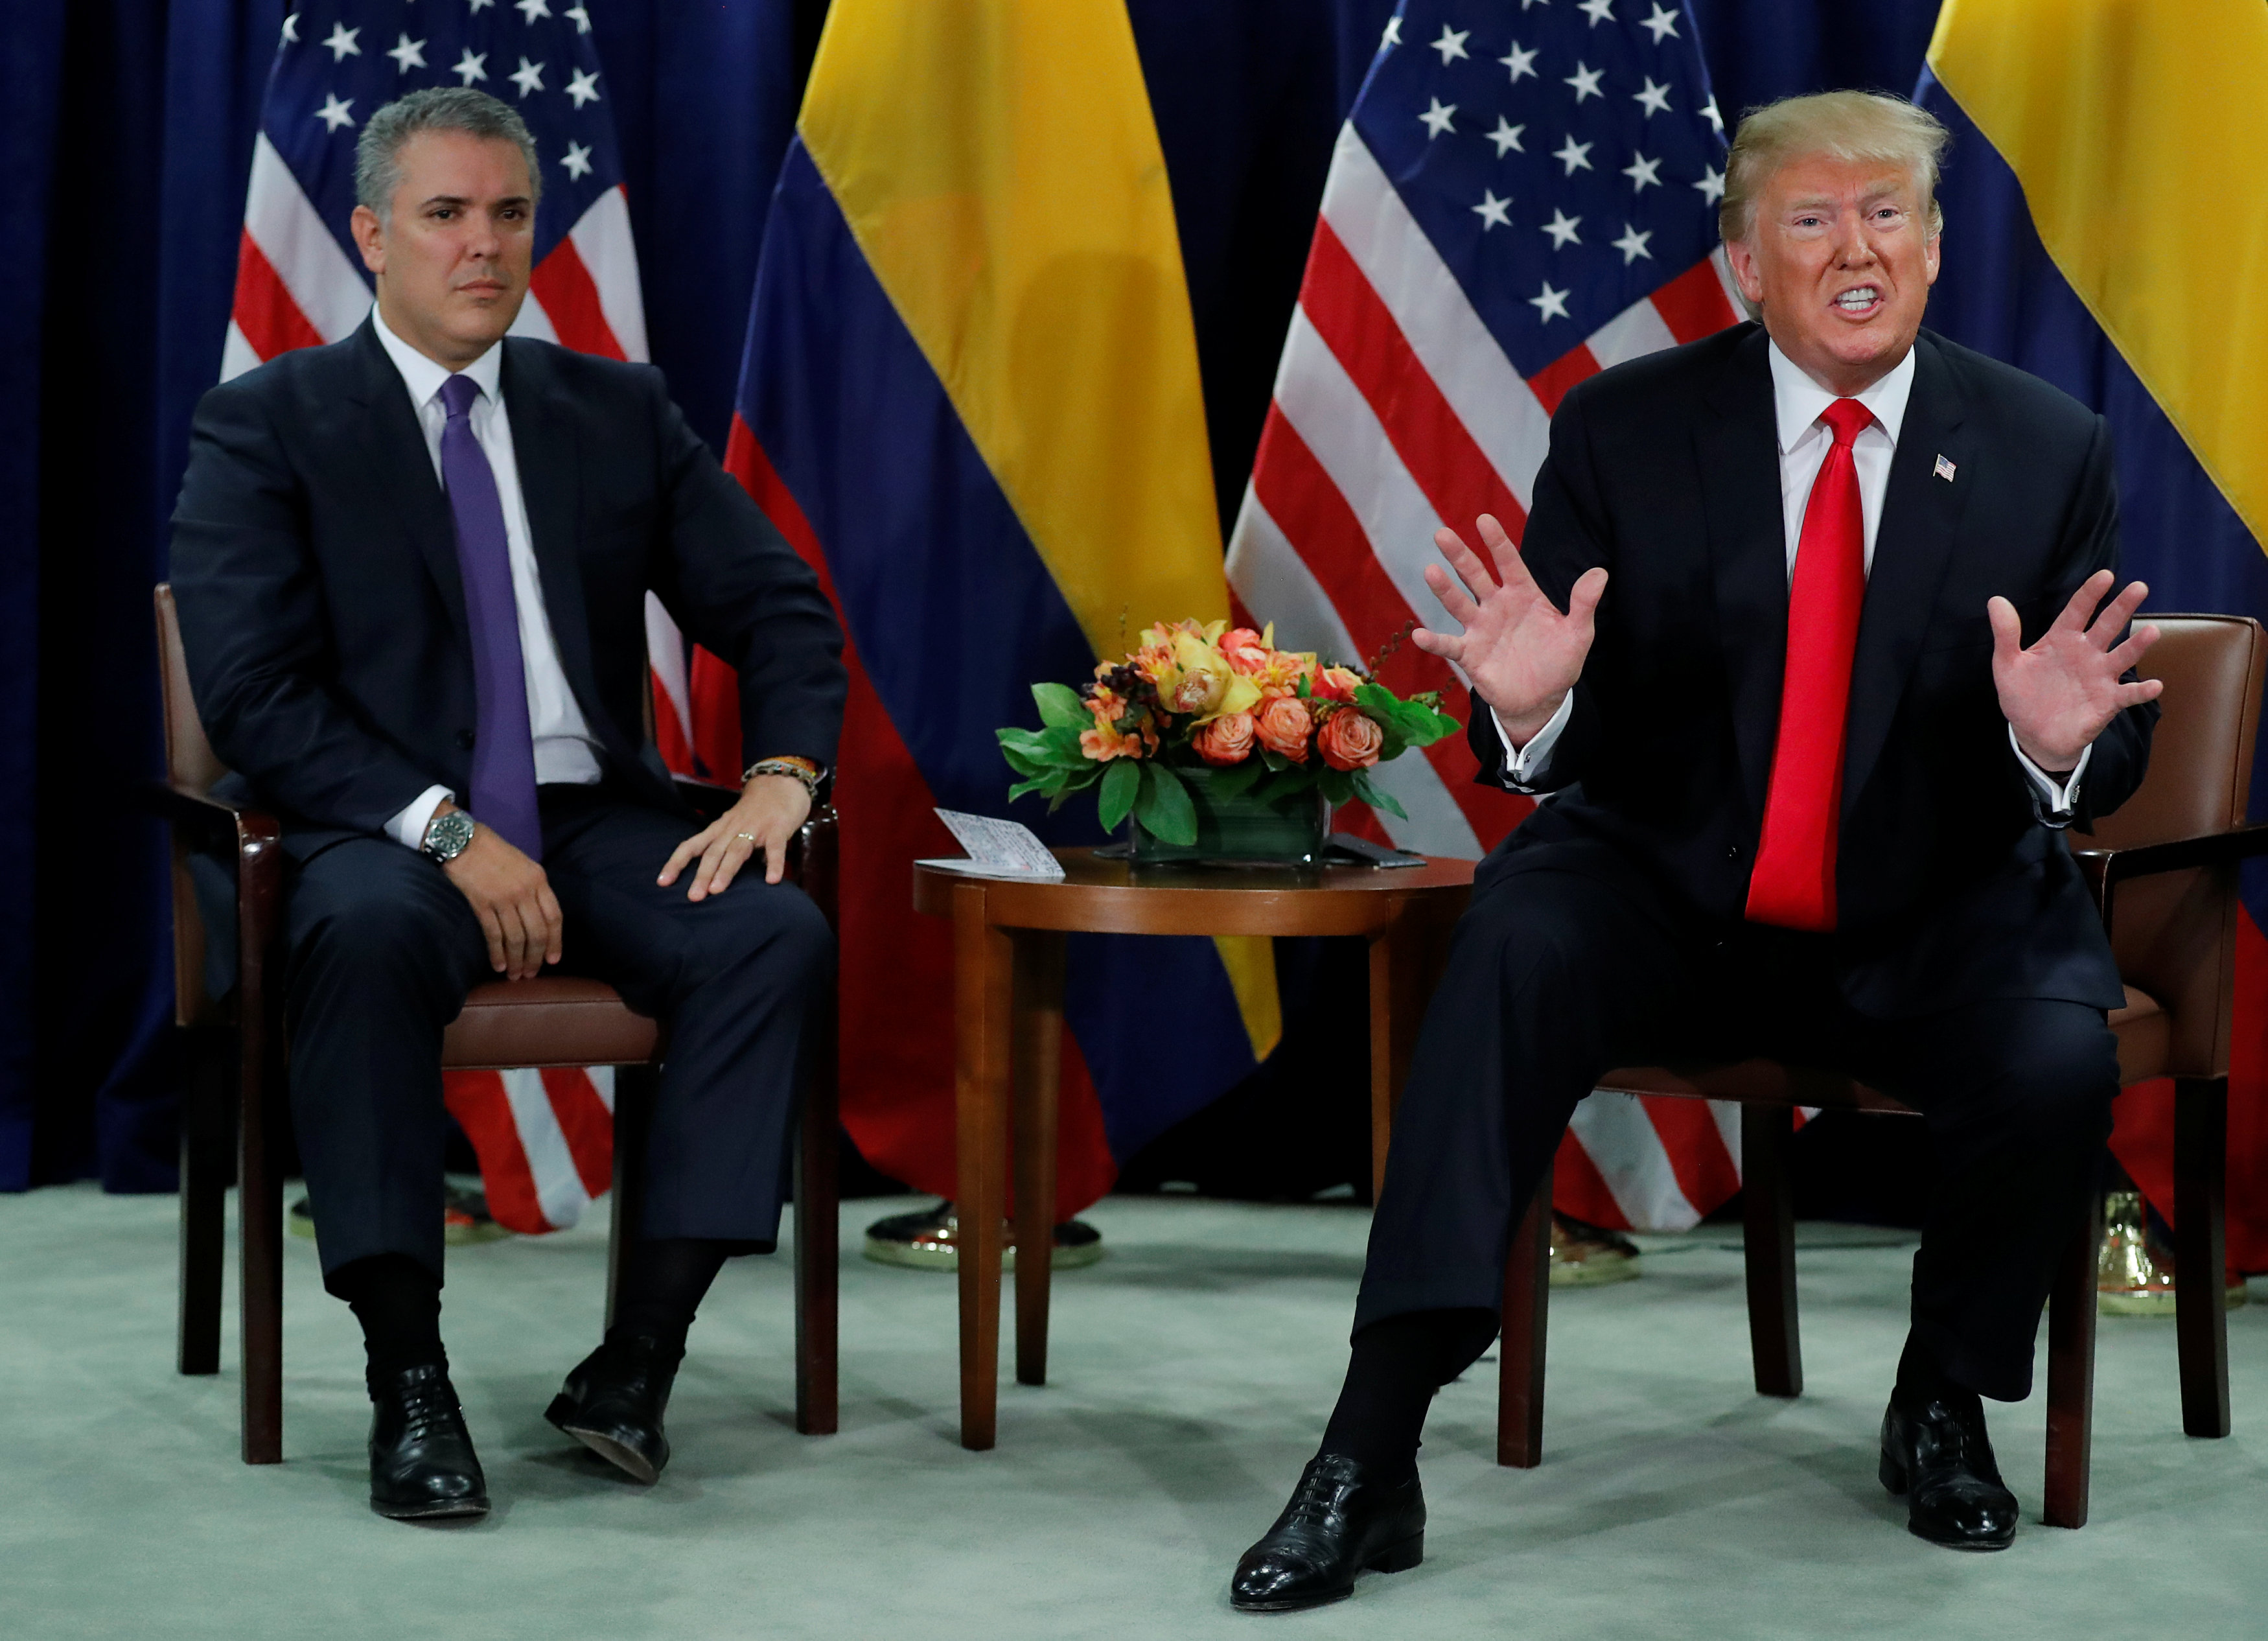 La declaración conjunta de Trump y Duque sobre Venezuela (DOCUMENTO)